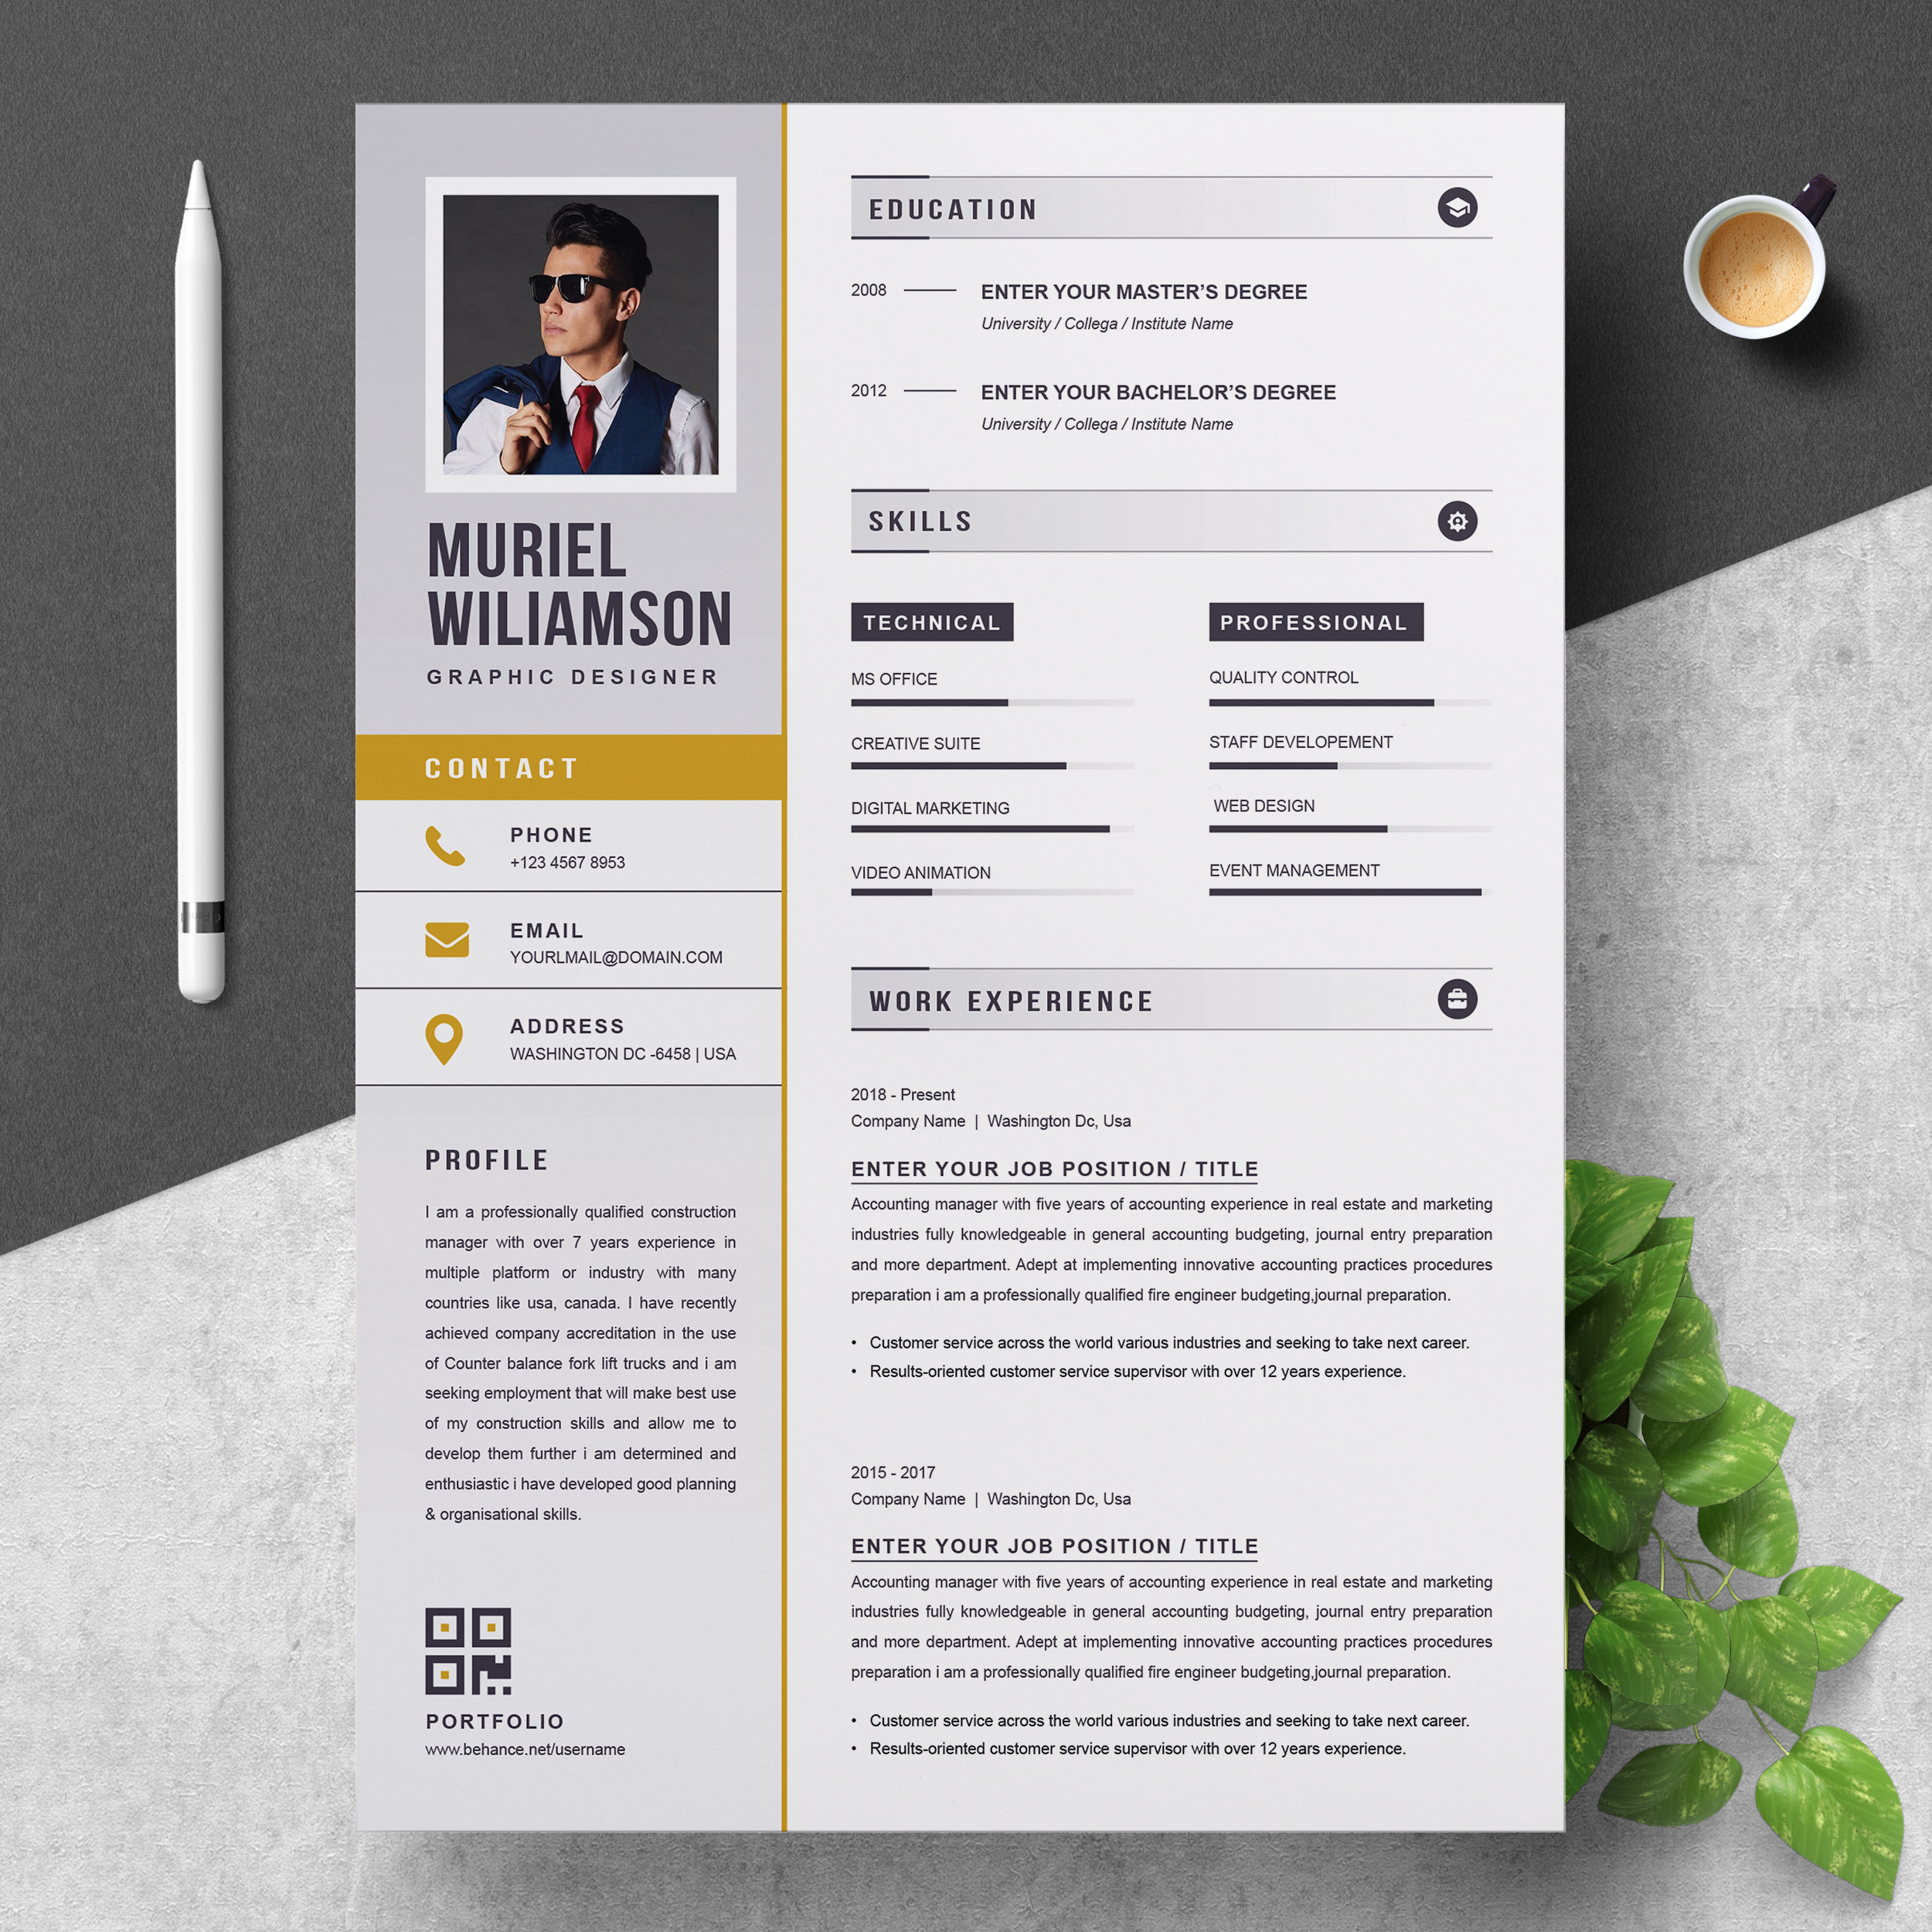 graphic designer resume profile examples